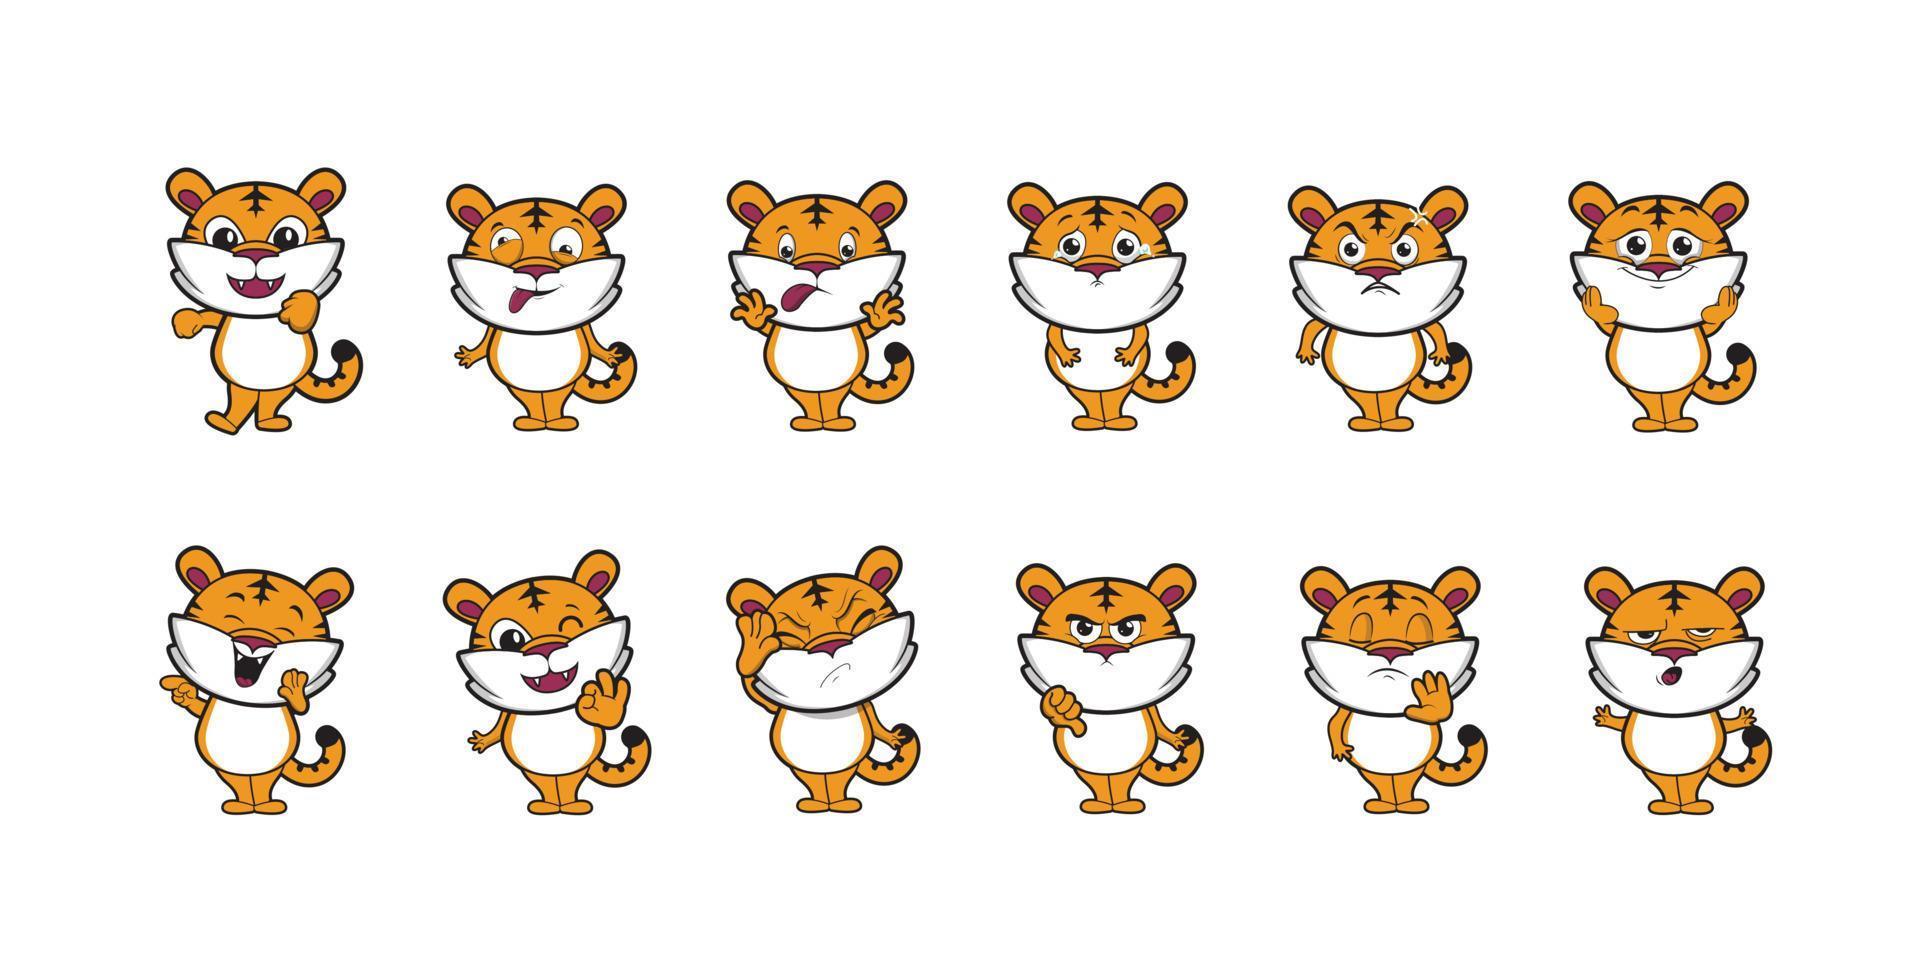 disegno dell'illustrazione di vettore dell'emoticon della tigre